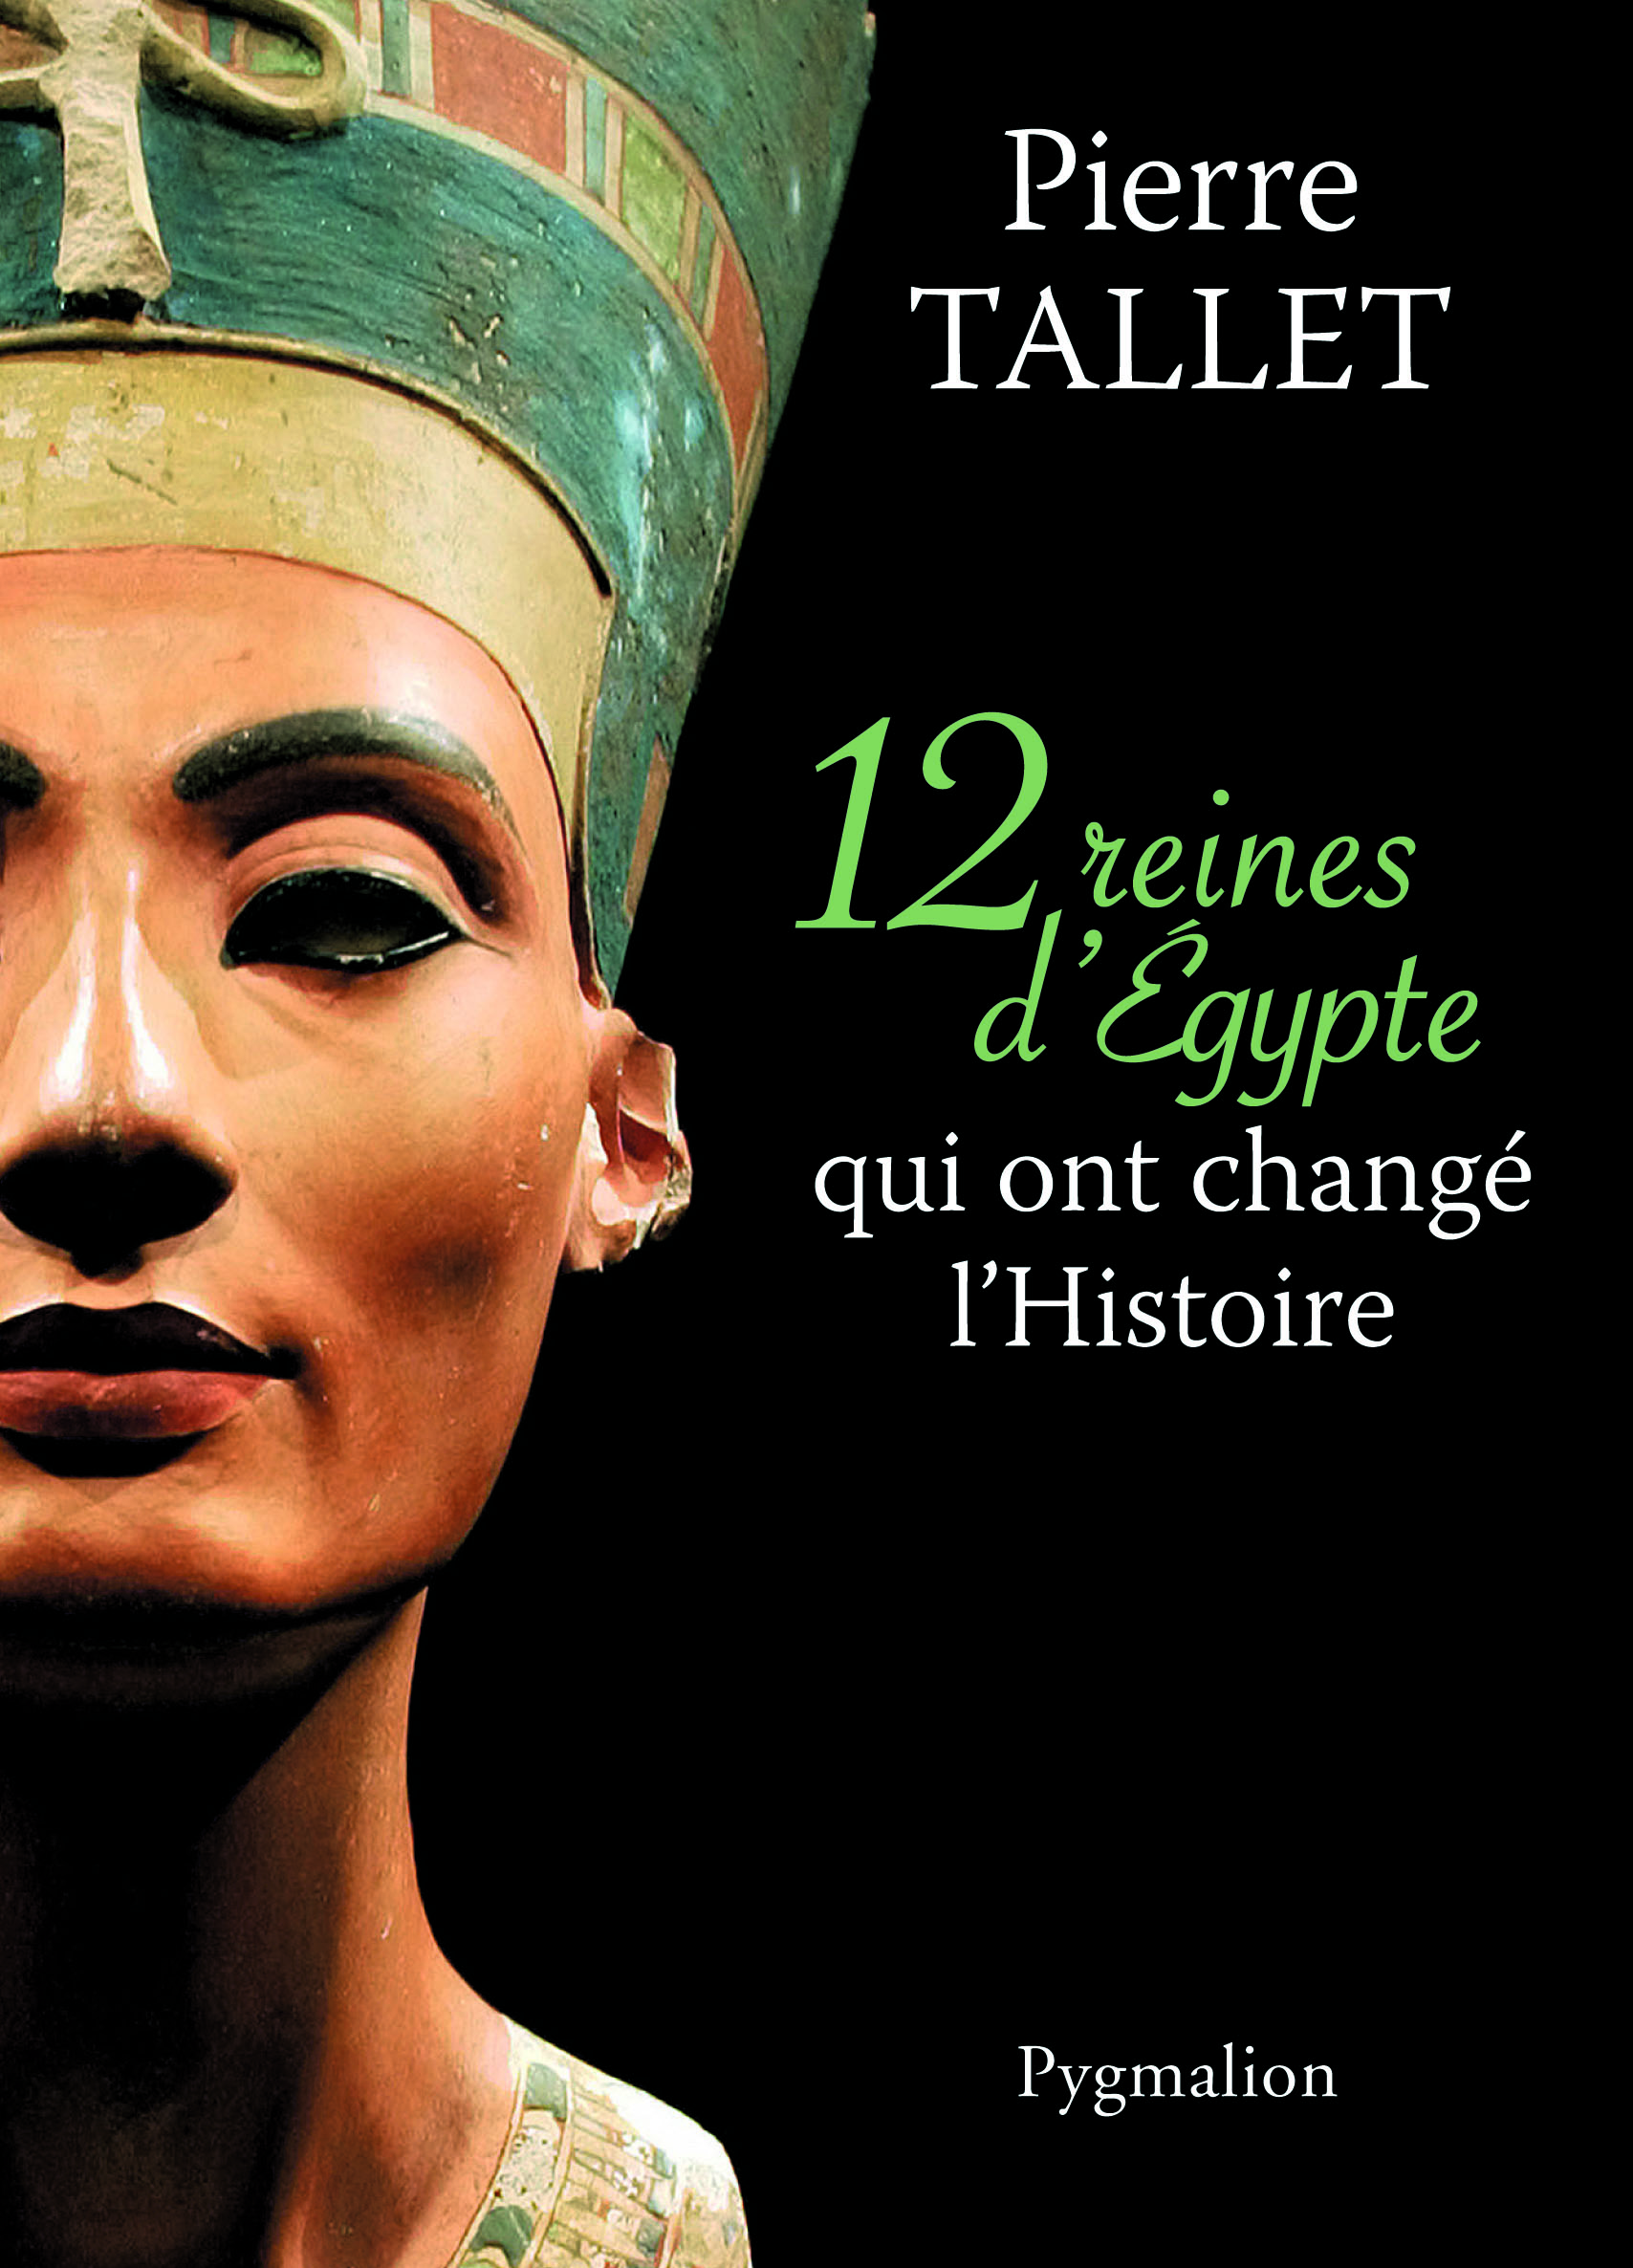 12 reines d'Egypte qui ont changé l'Histoire, 2013.